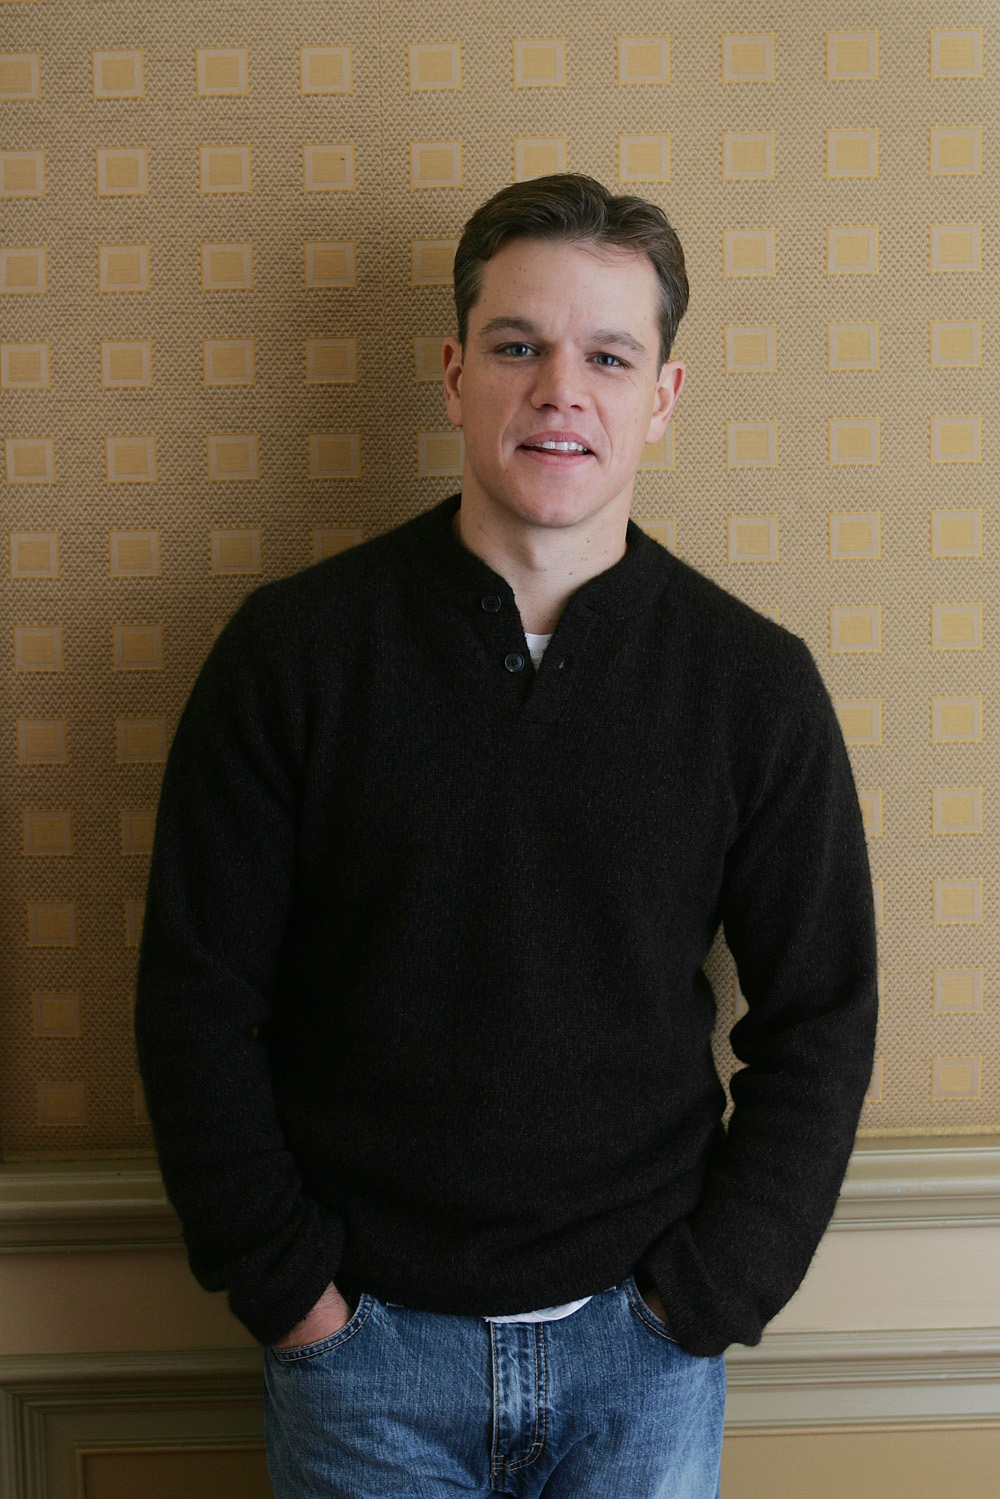 Matt Damon photo #218572